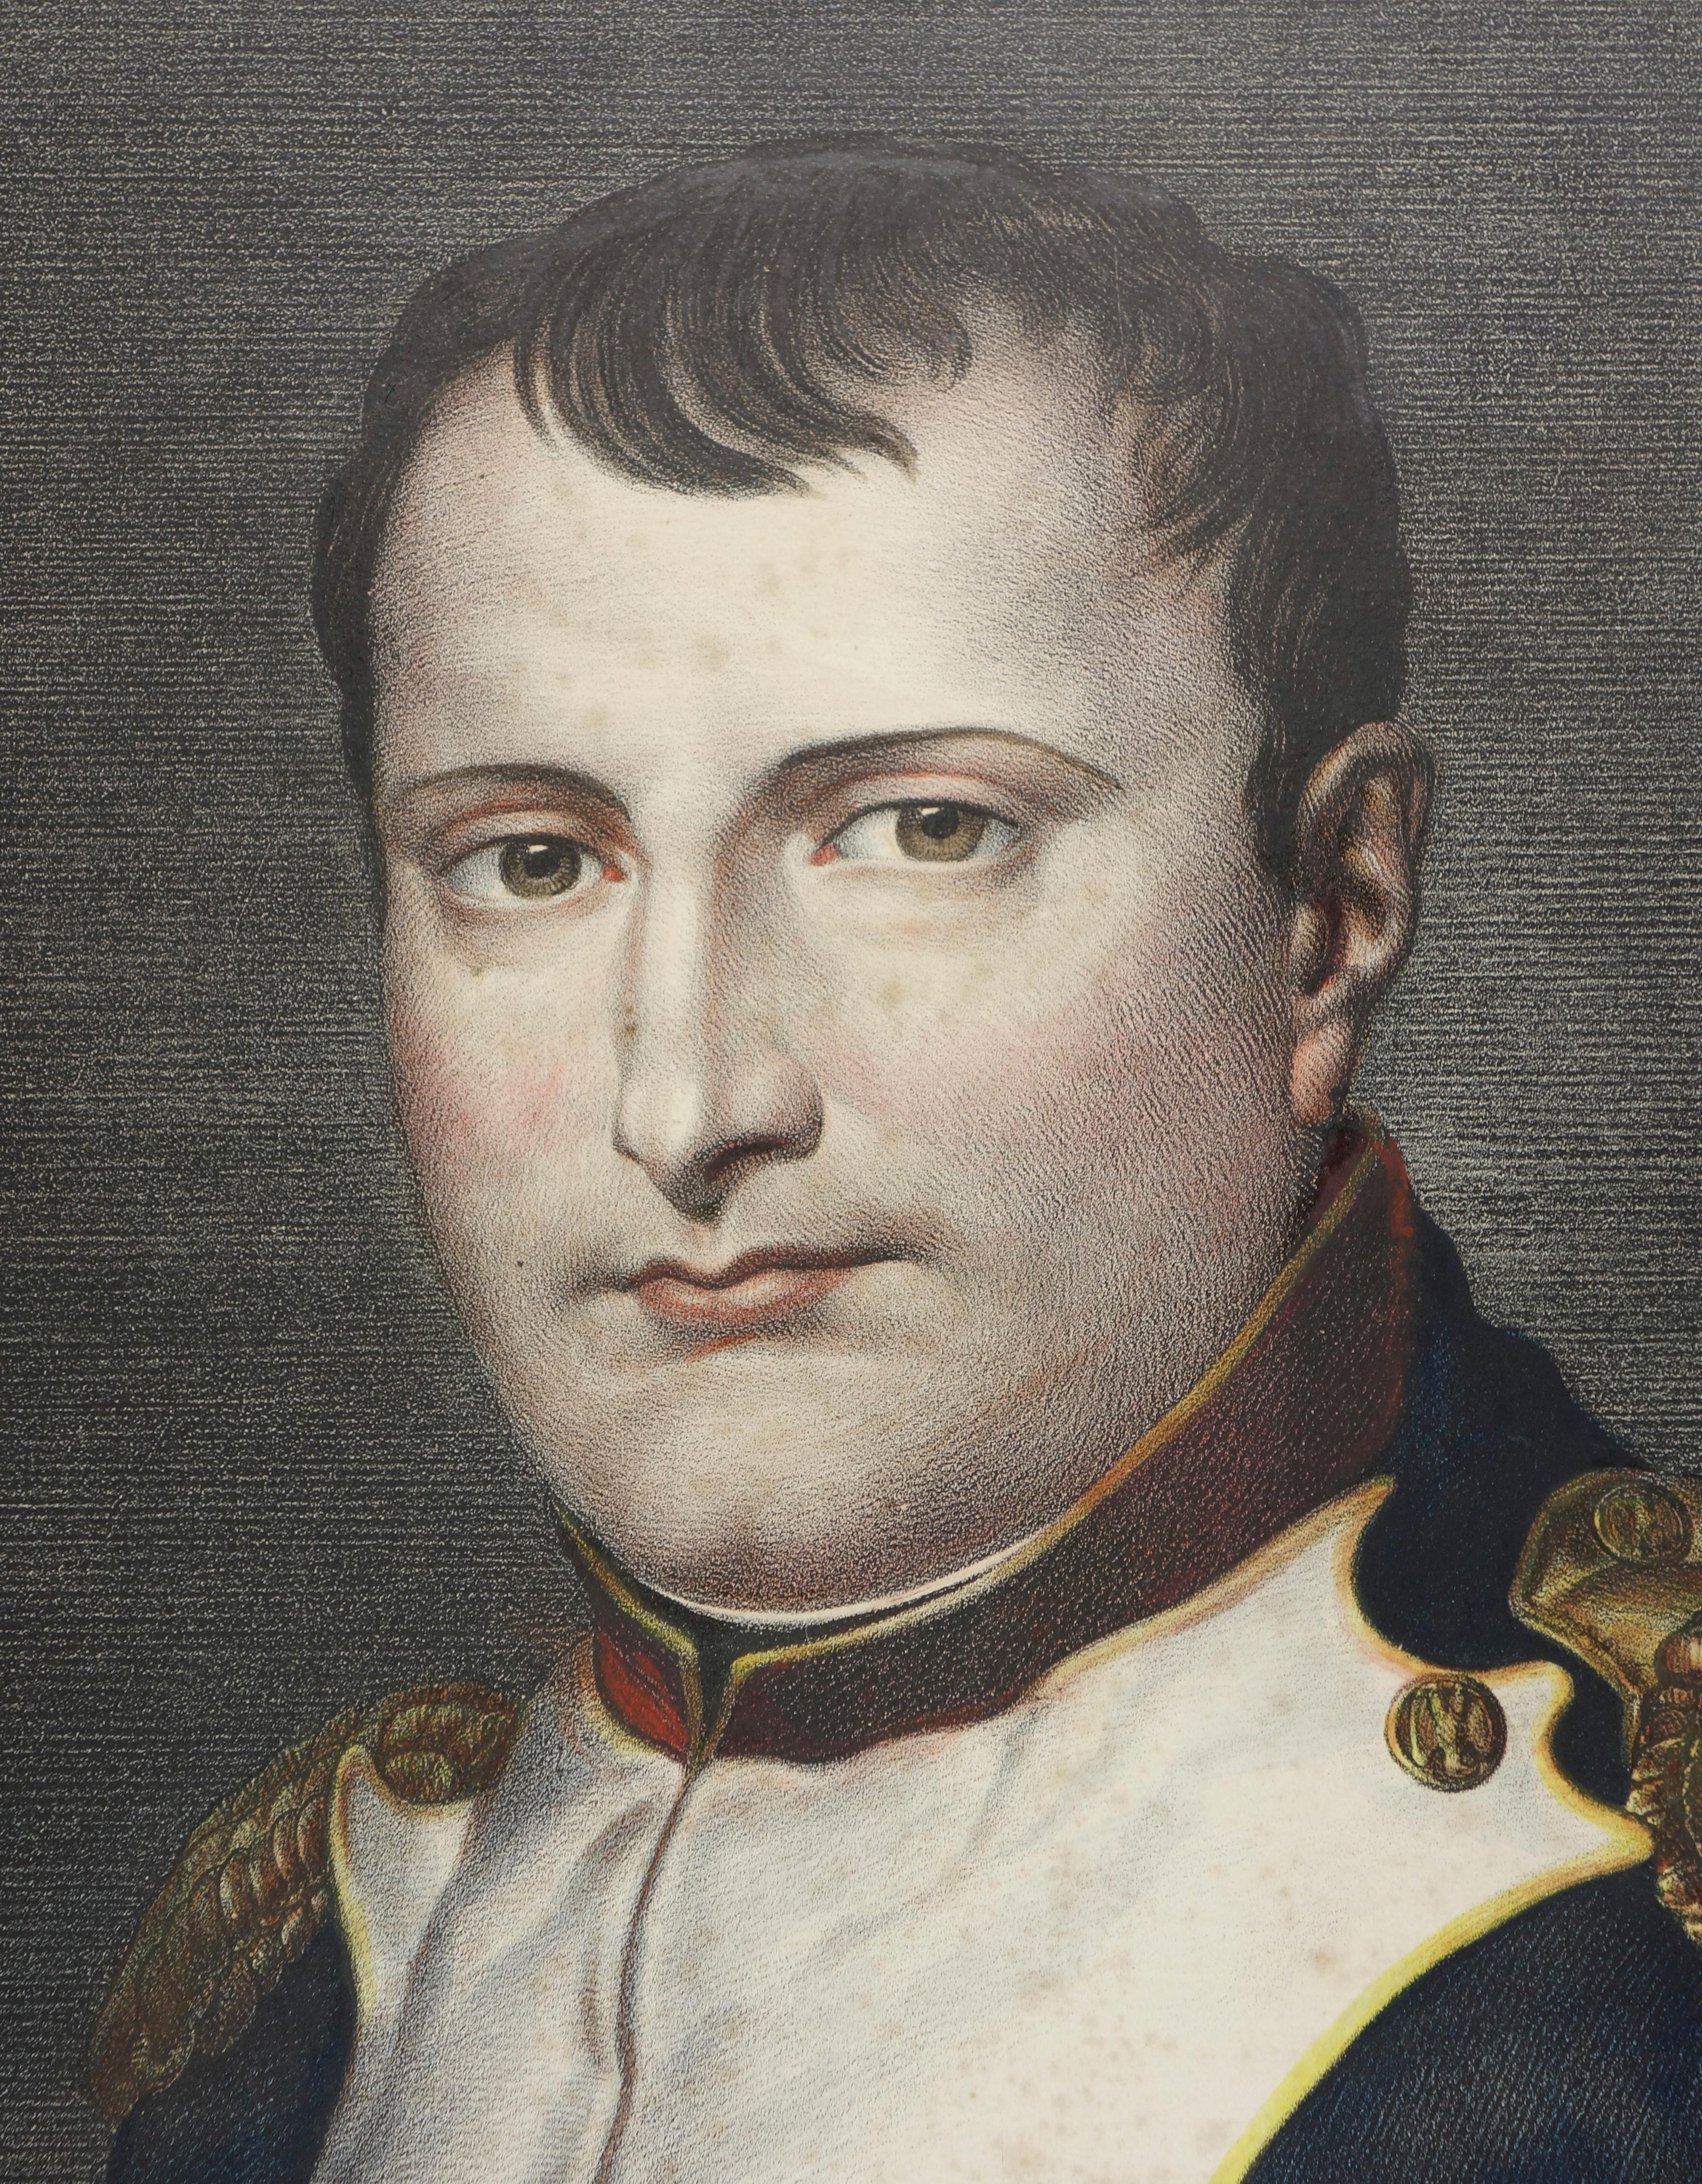  Portrait of Napoleon I - Print by Jacques-Louis David